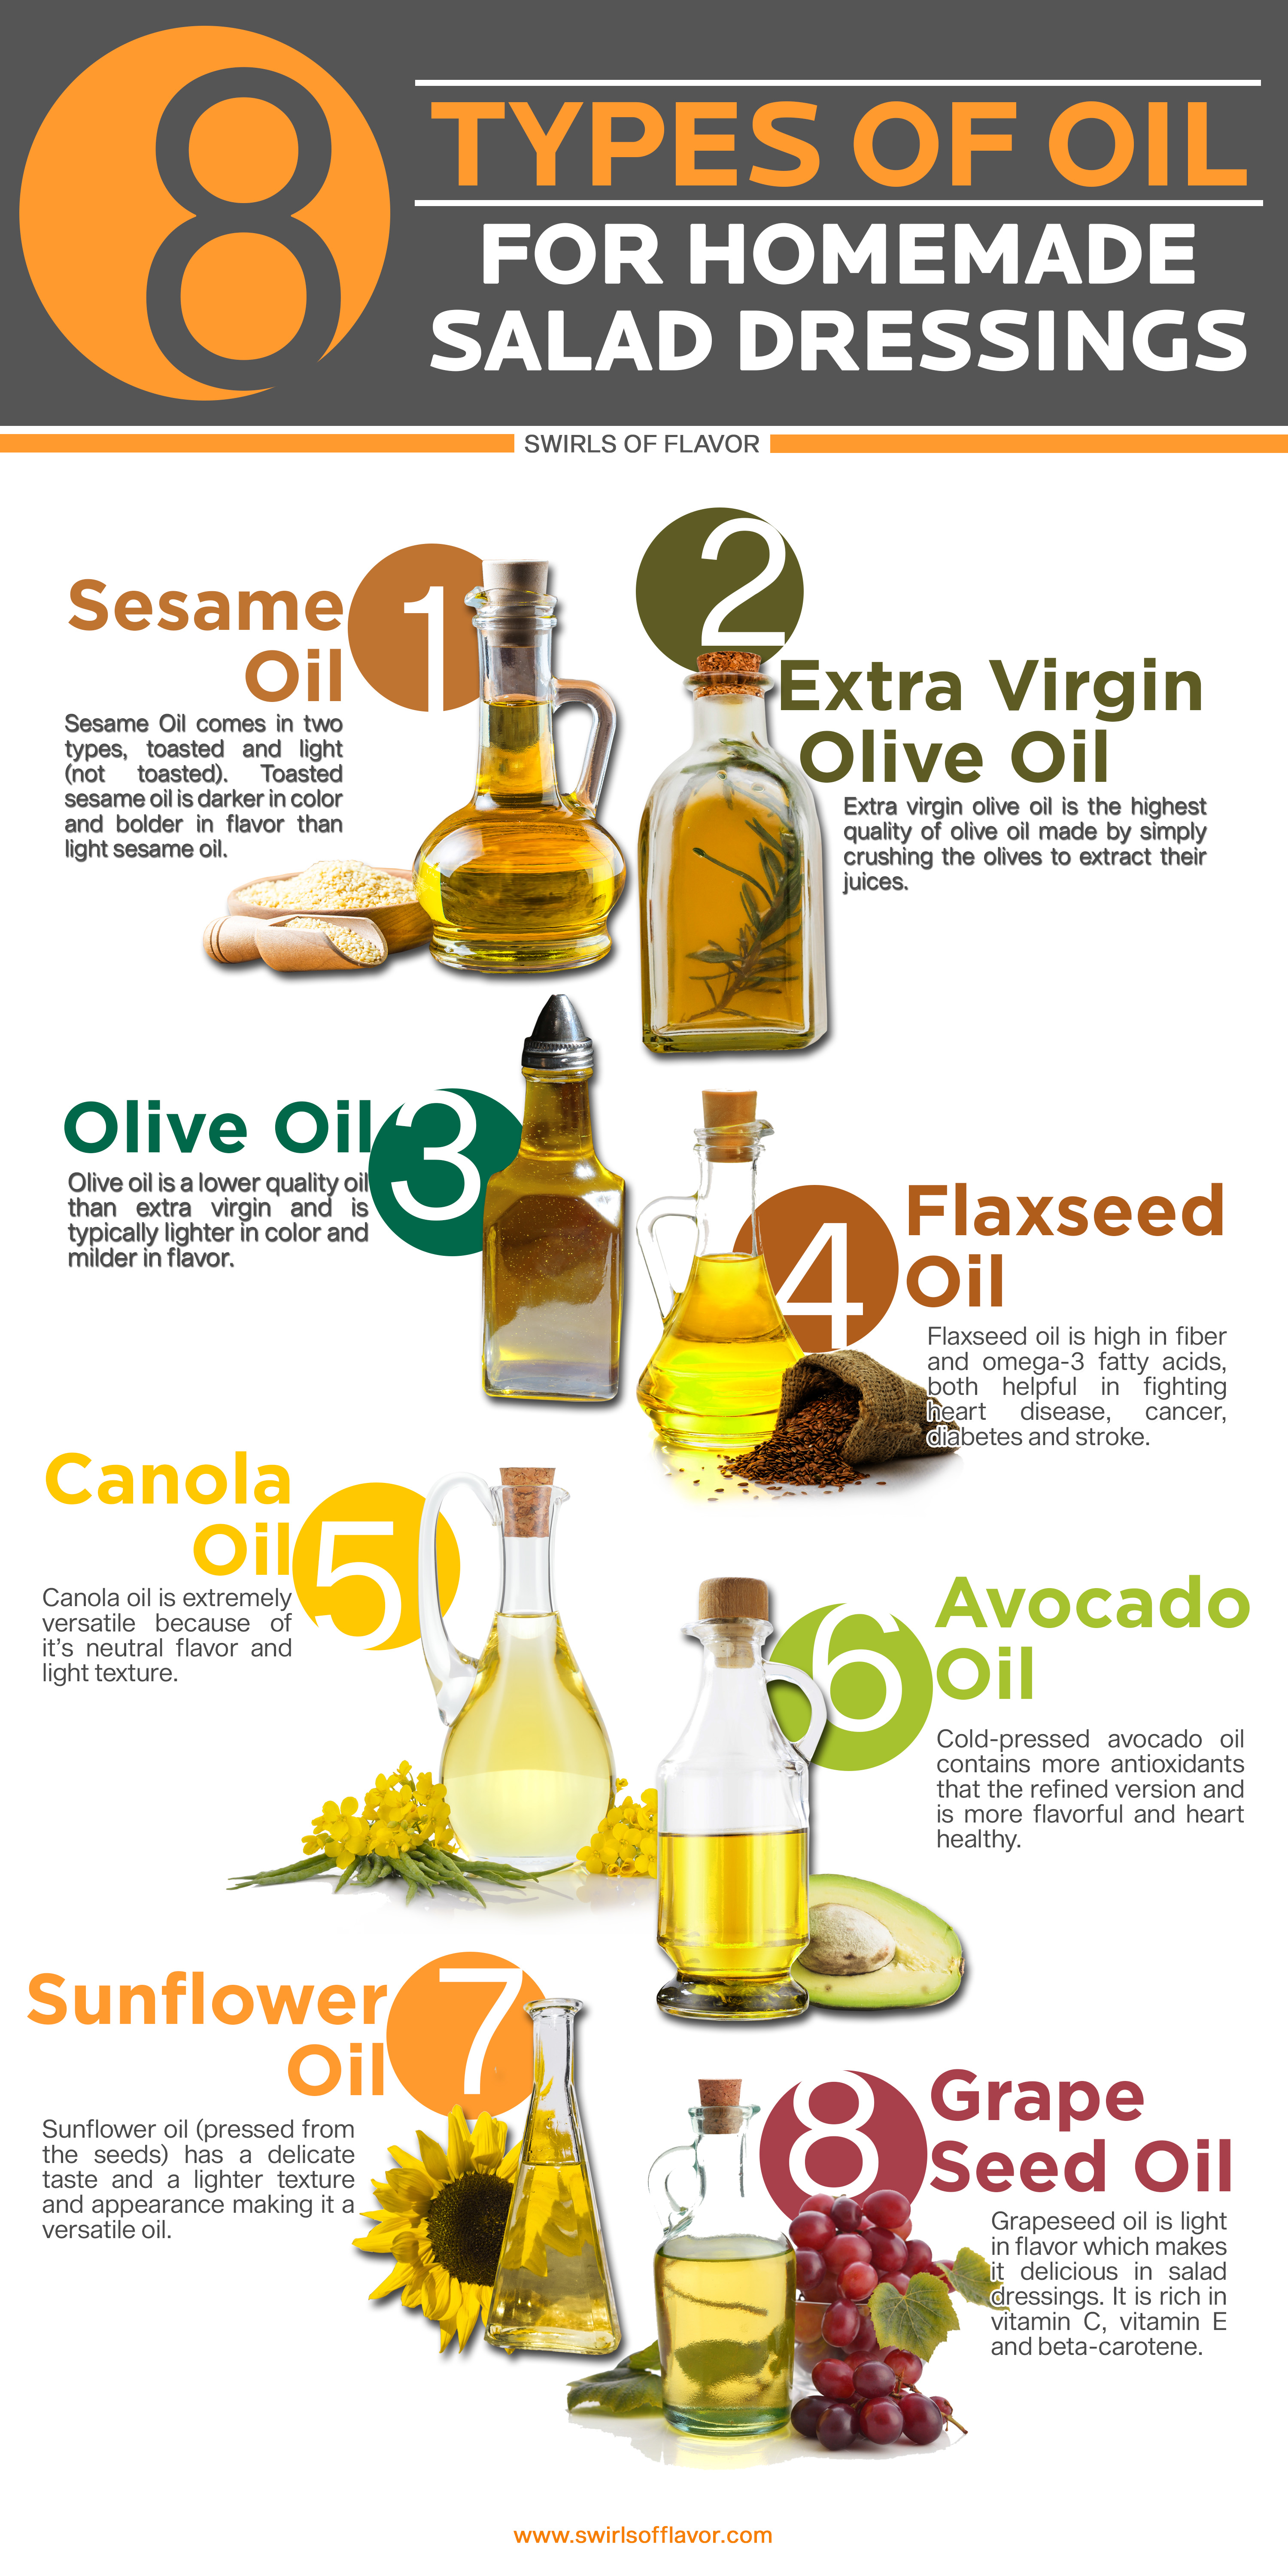 Oils for homemade salad drressings